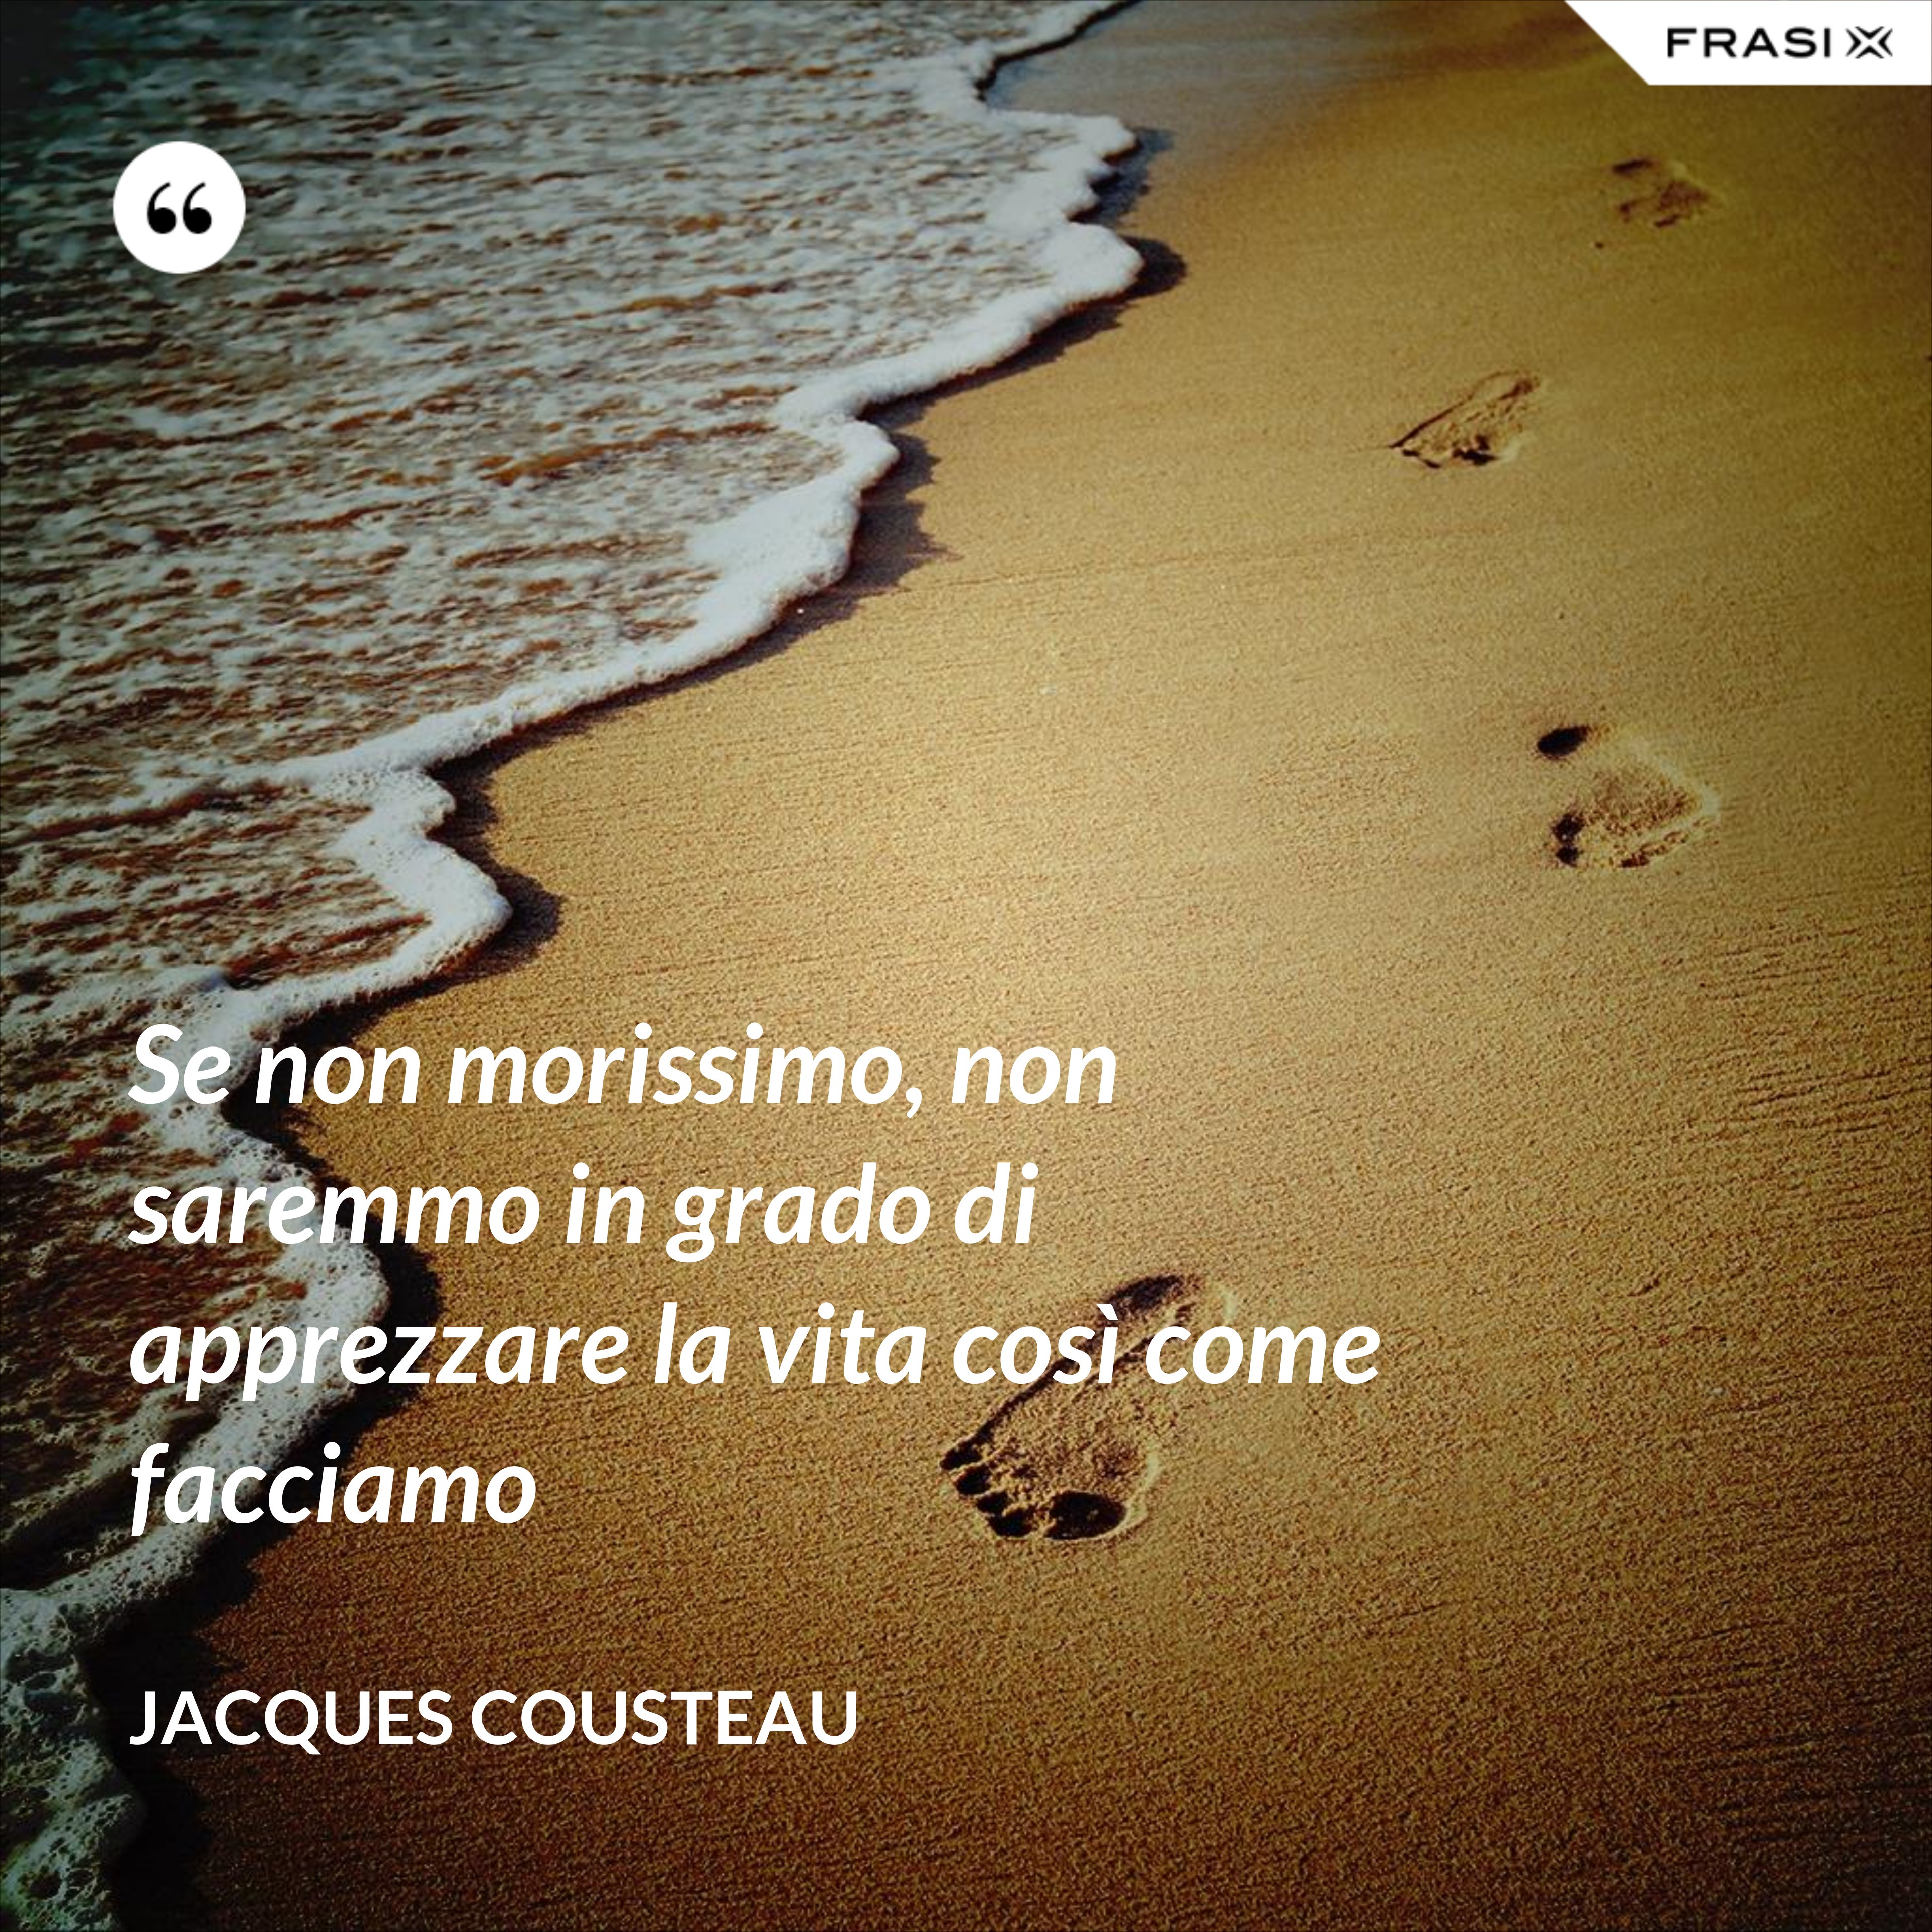 Se non morissimo, non saremmo in grado di apprezzare la vita così come facciamo - Jacques Cousteau